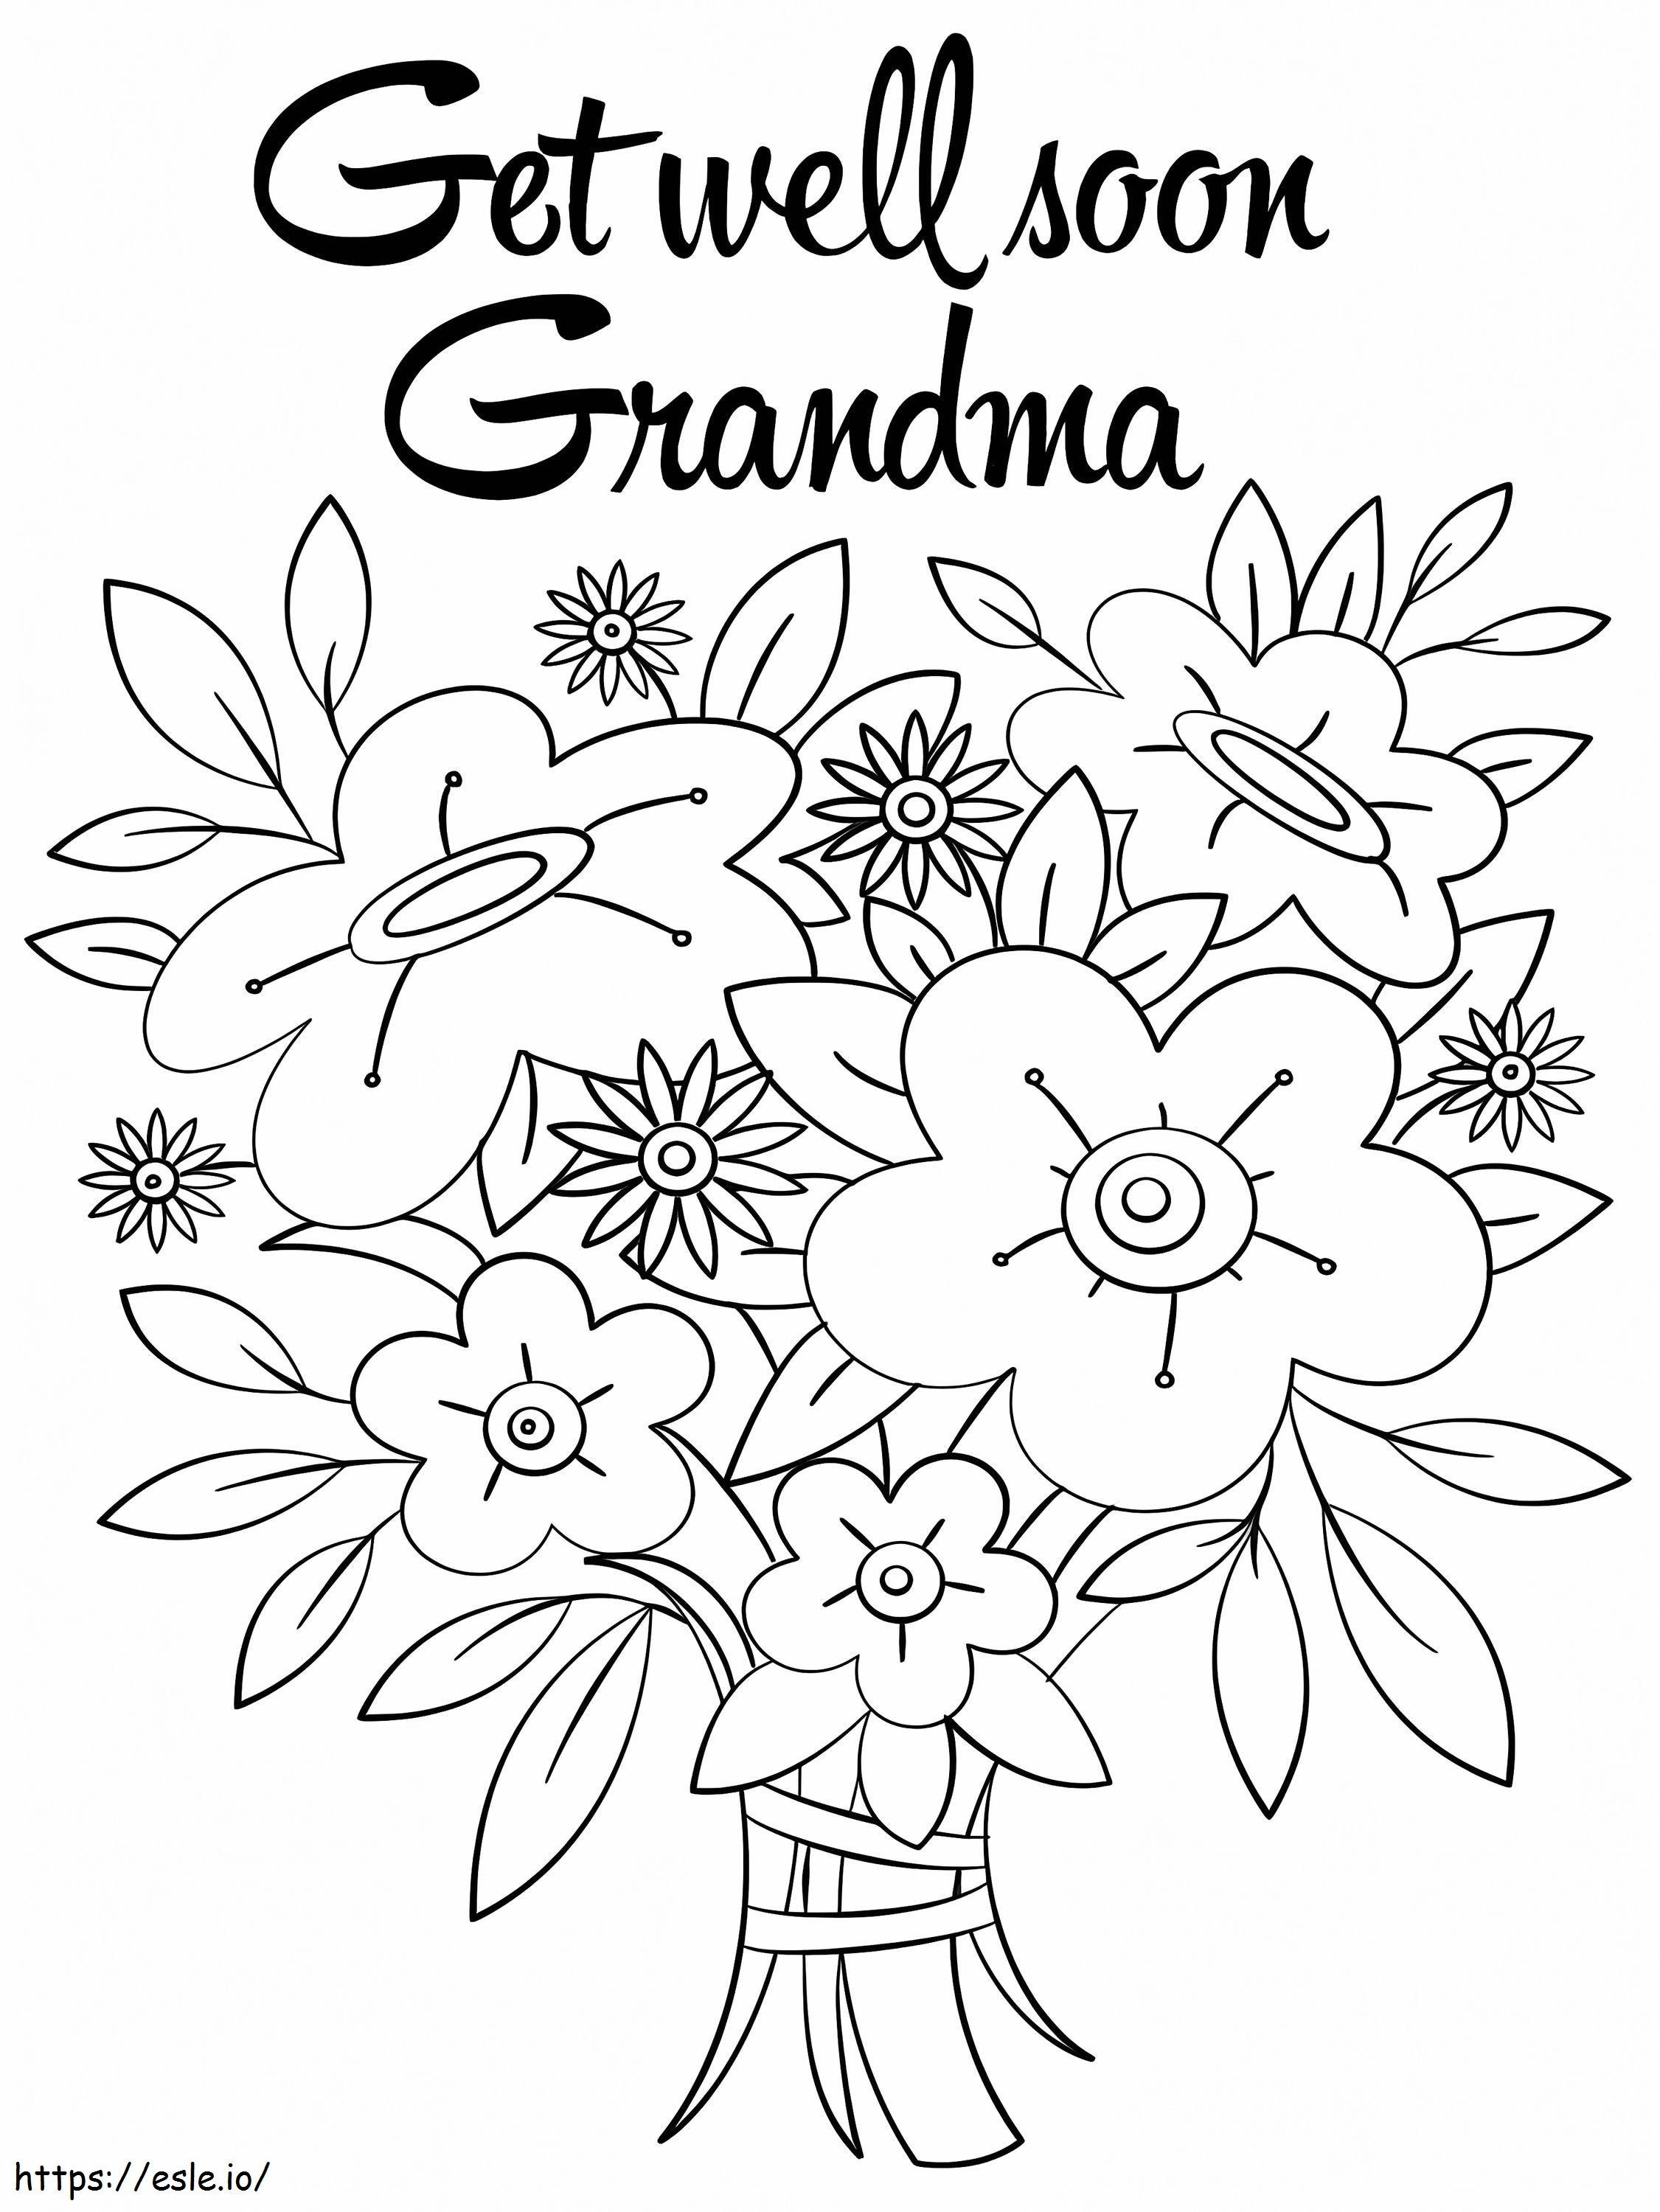 Coloriage Guérissez bientôt grand-mère à imprimer dessin